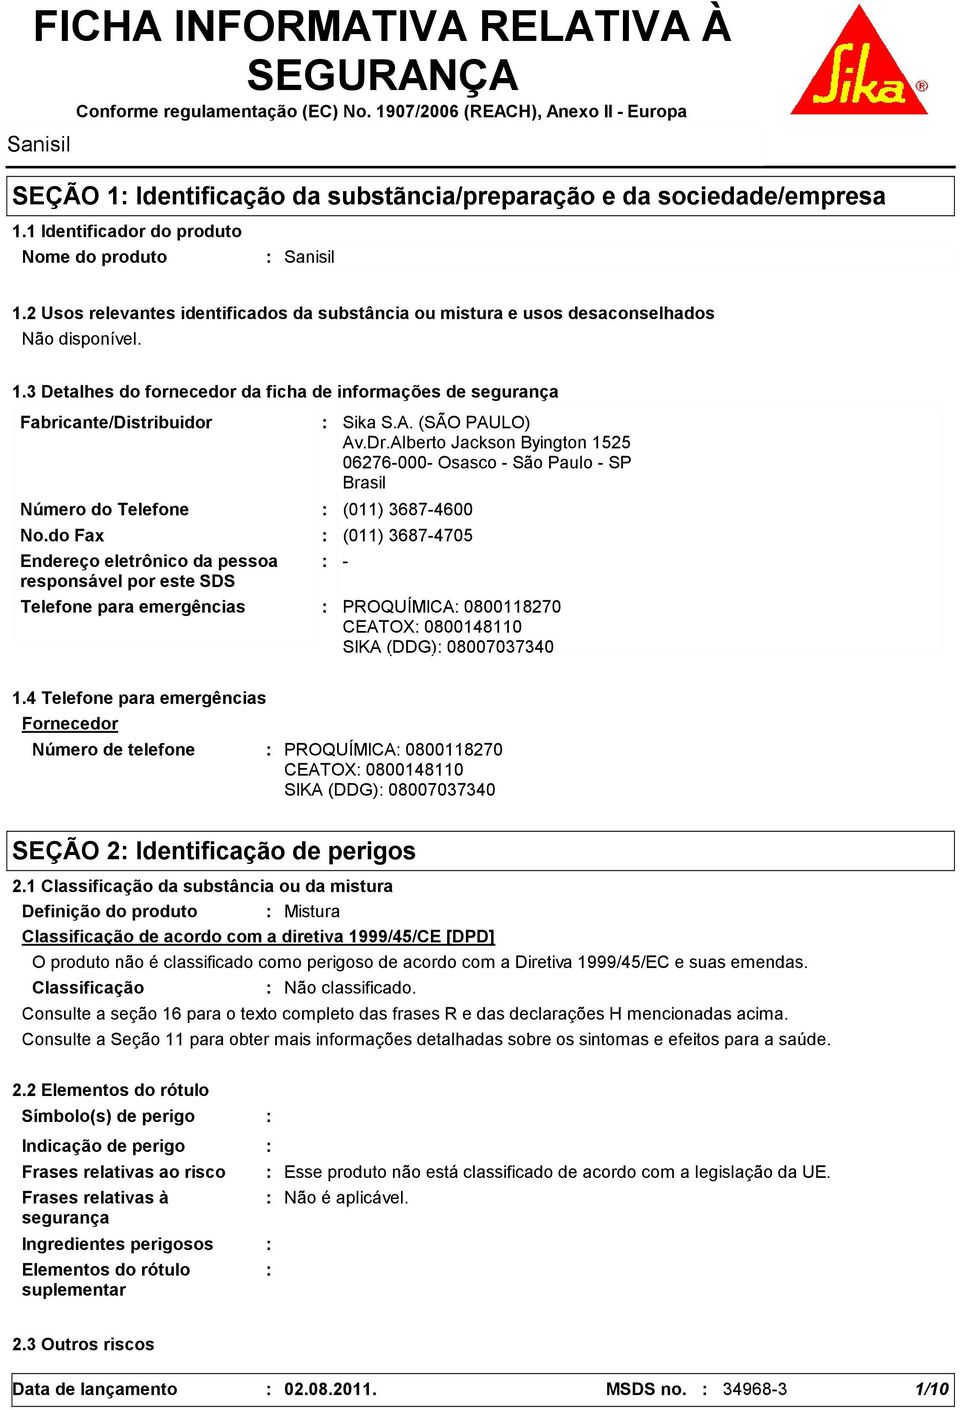 3 Detalhes do fornecedor da ficha de informações de segurança Fabricante/Distribuidor Número do Telefone Telefone para emergências Sika S.A. (SÃO PAULO) Av.Dr.